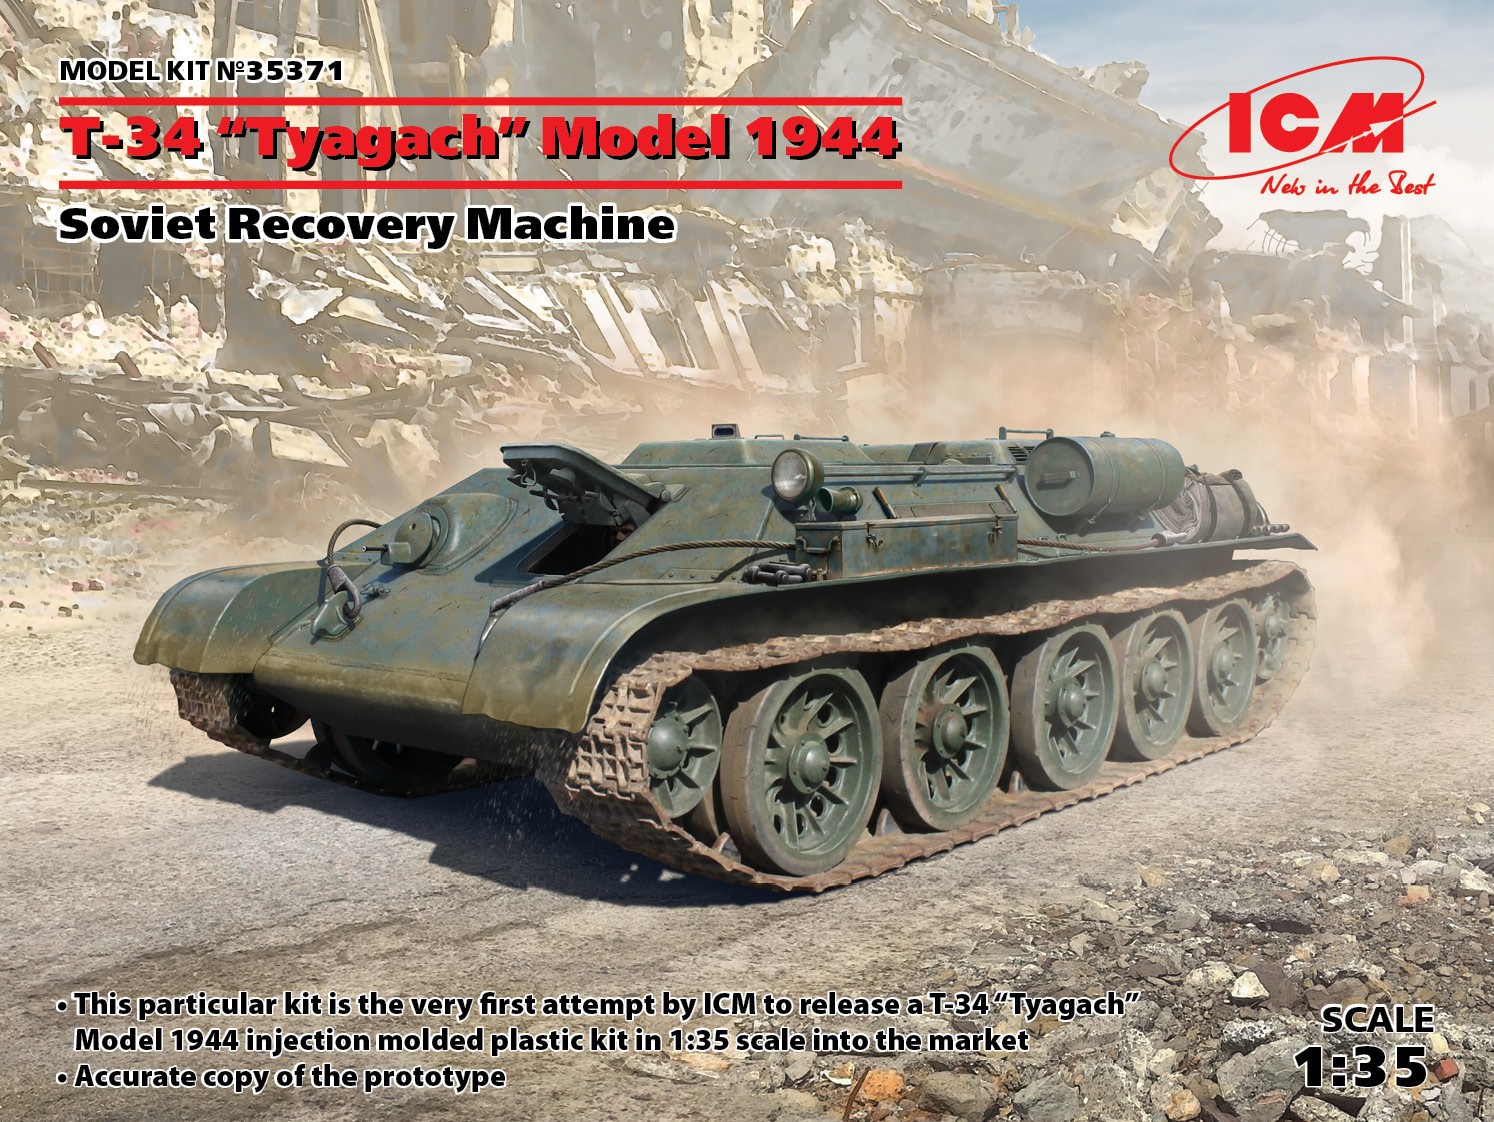 Maquette ICM Soviétique T-34 Tyagach modèle 1944, machine de récupér